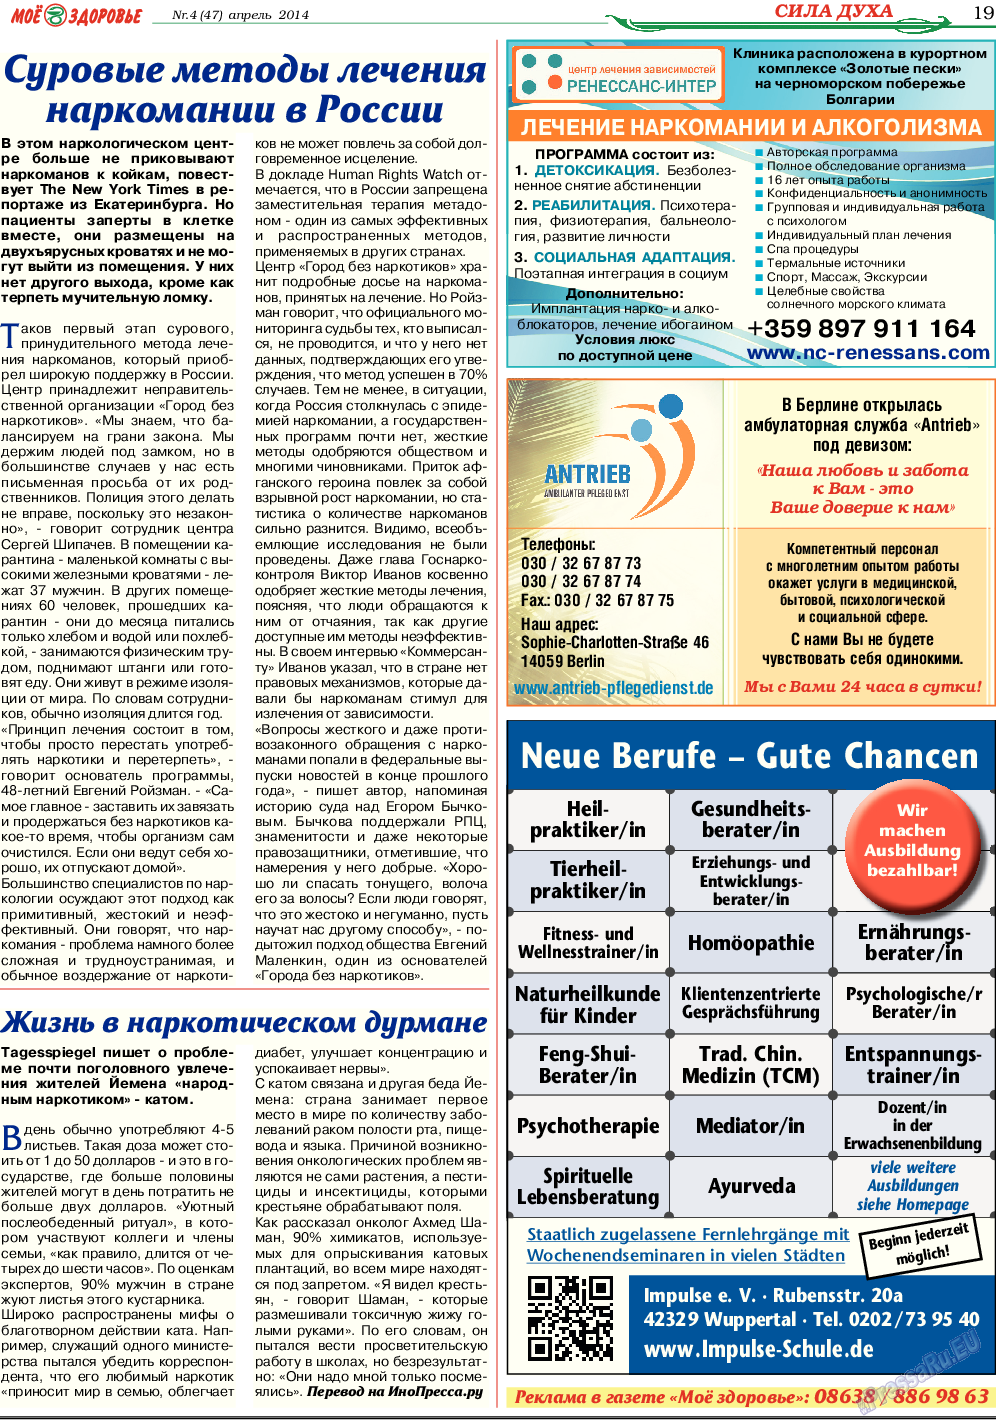 Кругозор, газета. 2014 №4 стр.19